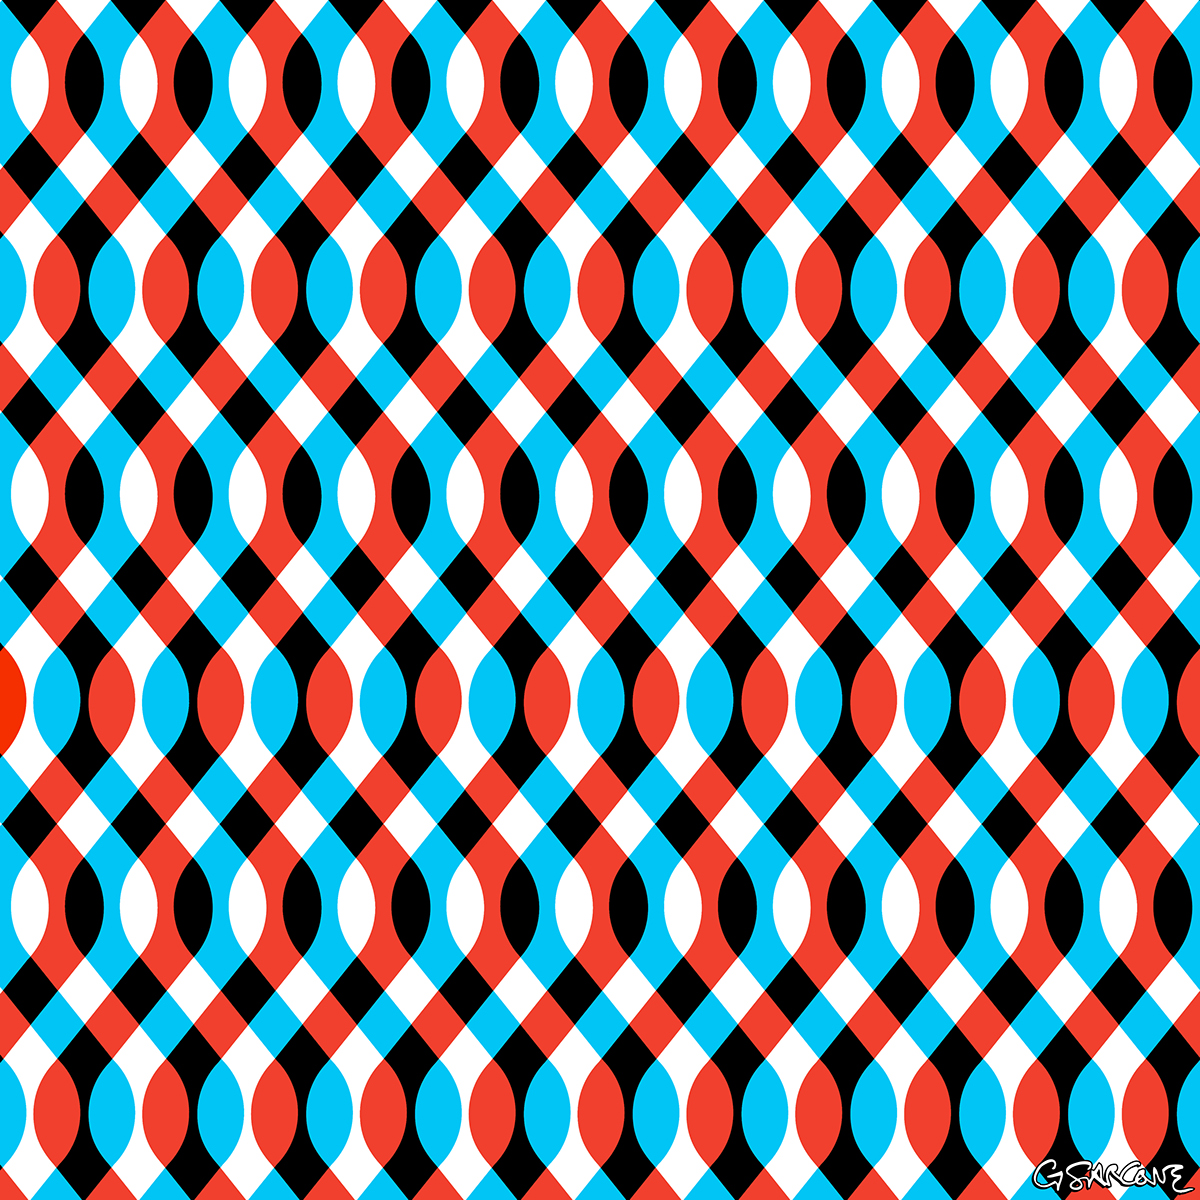 optical illusion visual illusion visual effect